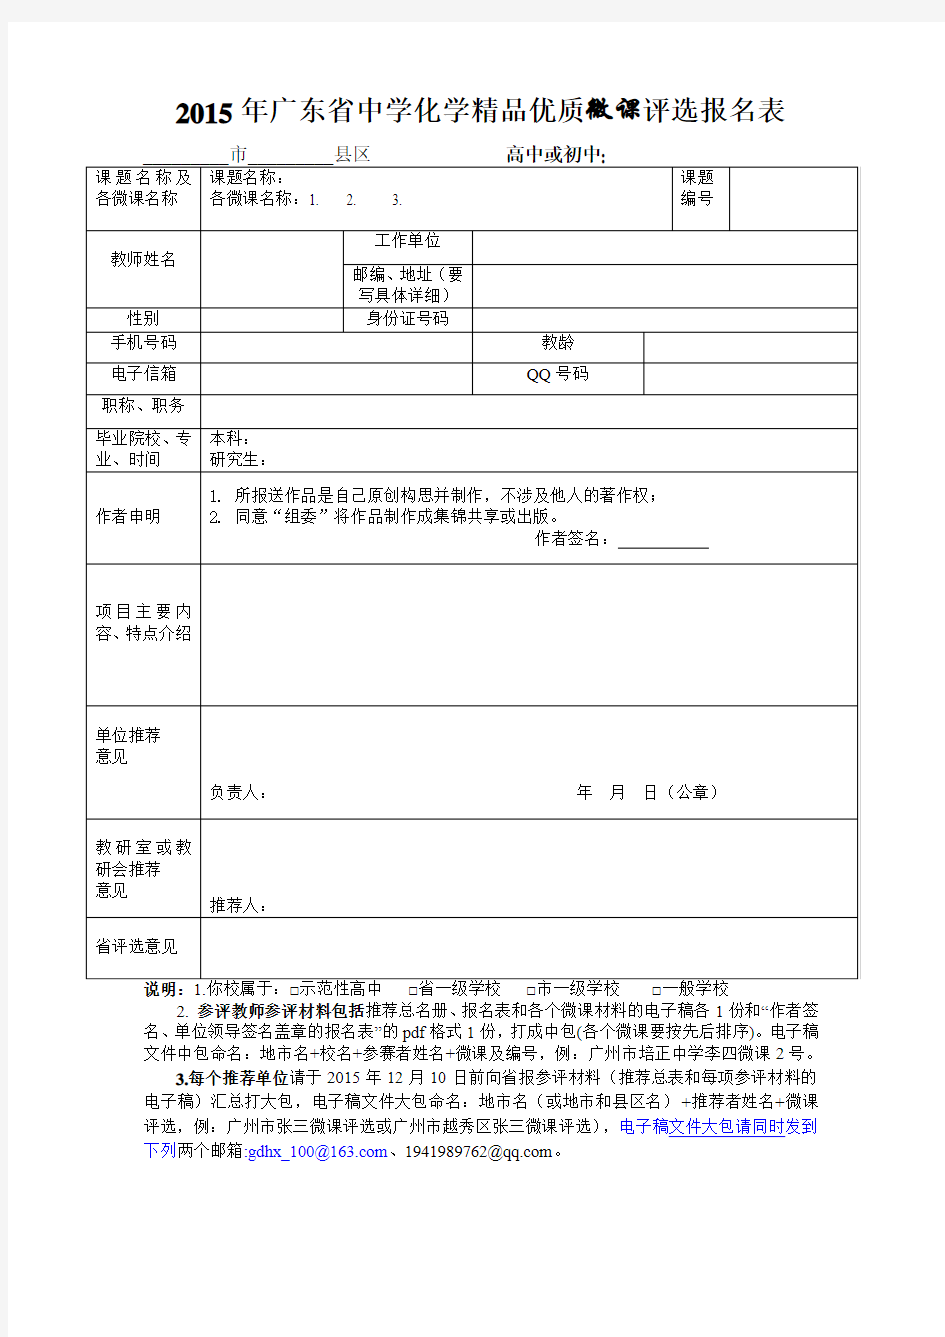 2015 10 18附录1广东省中学化学精品优质微课评选 推荐总名册、报名表